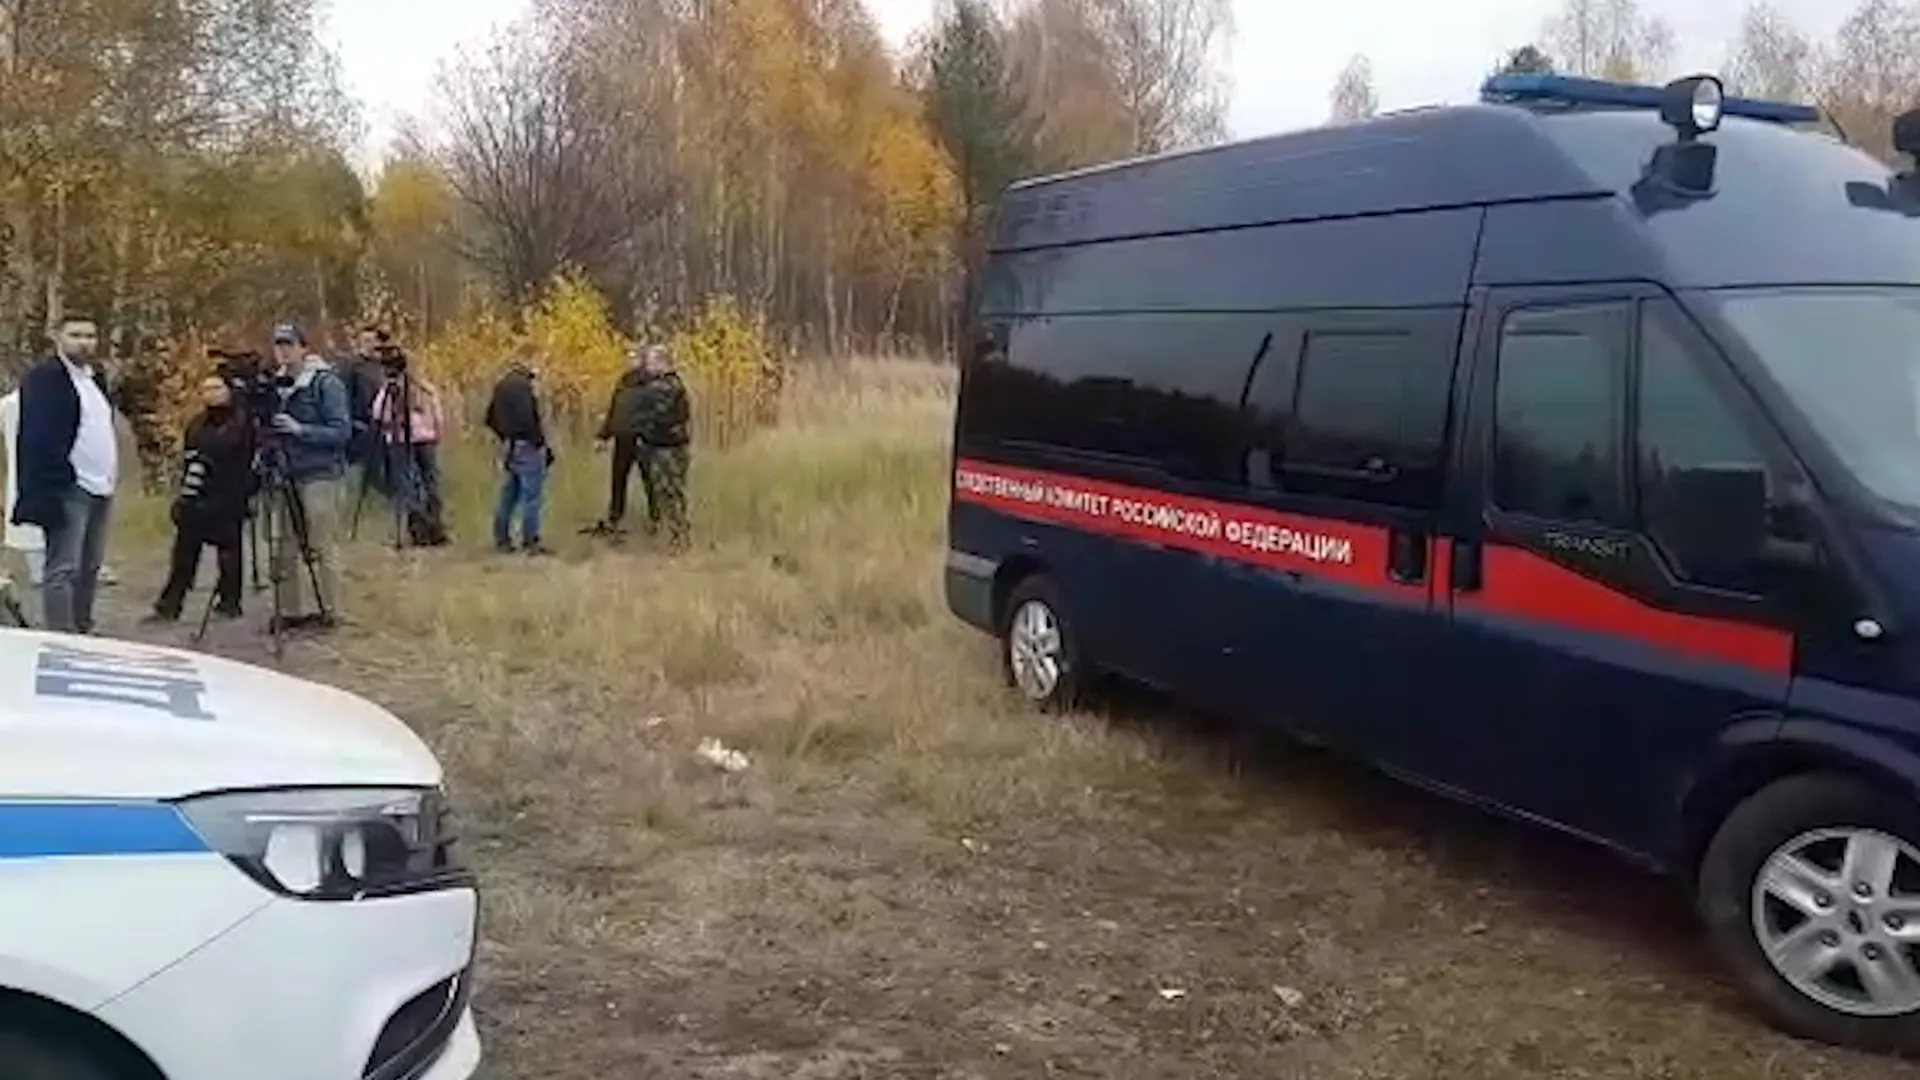 Появилось видео с места обнаружения тела стрелка в Нижегородской области